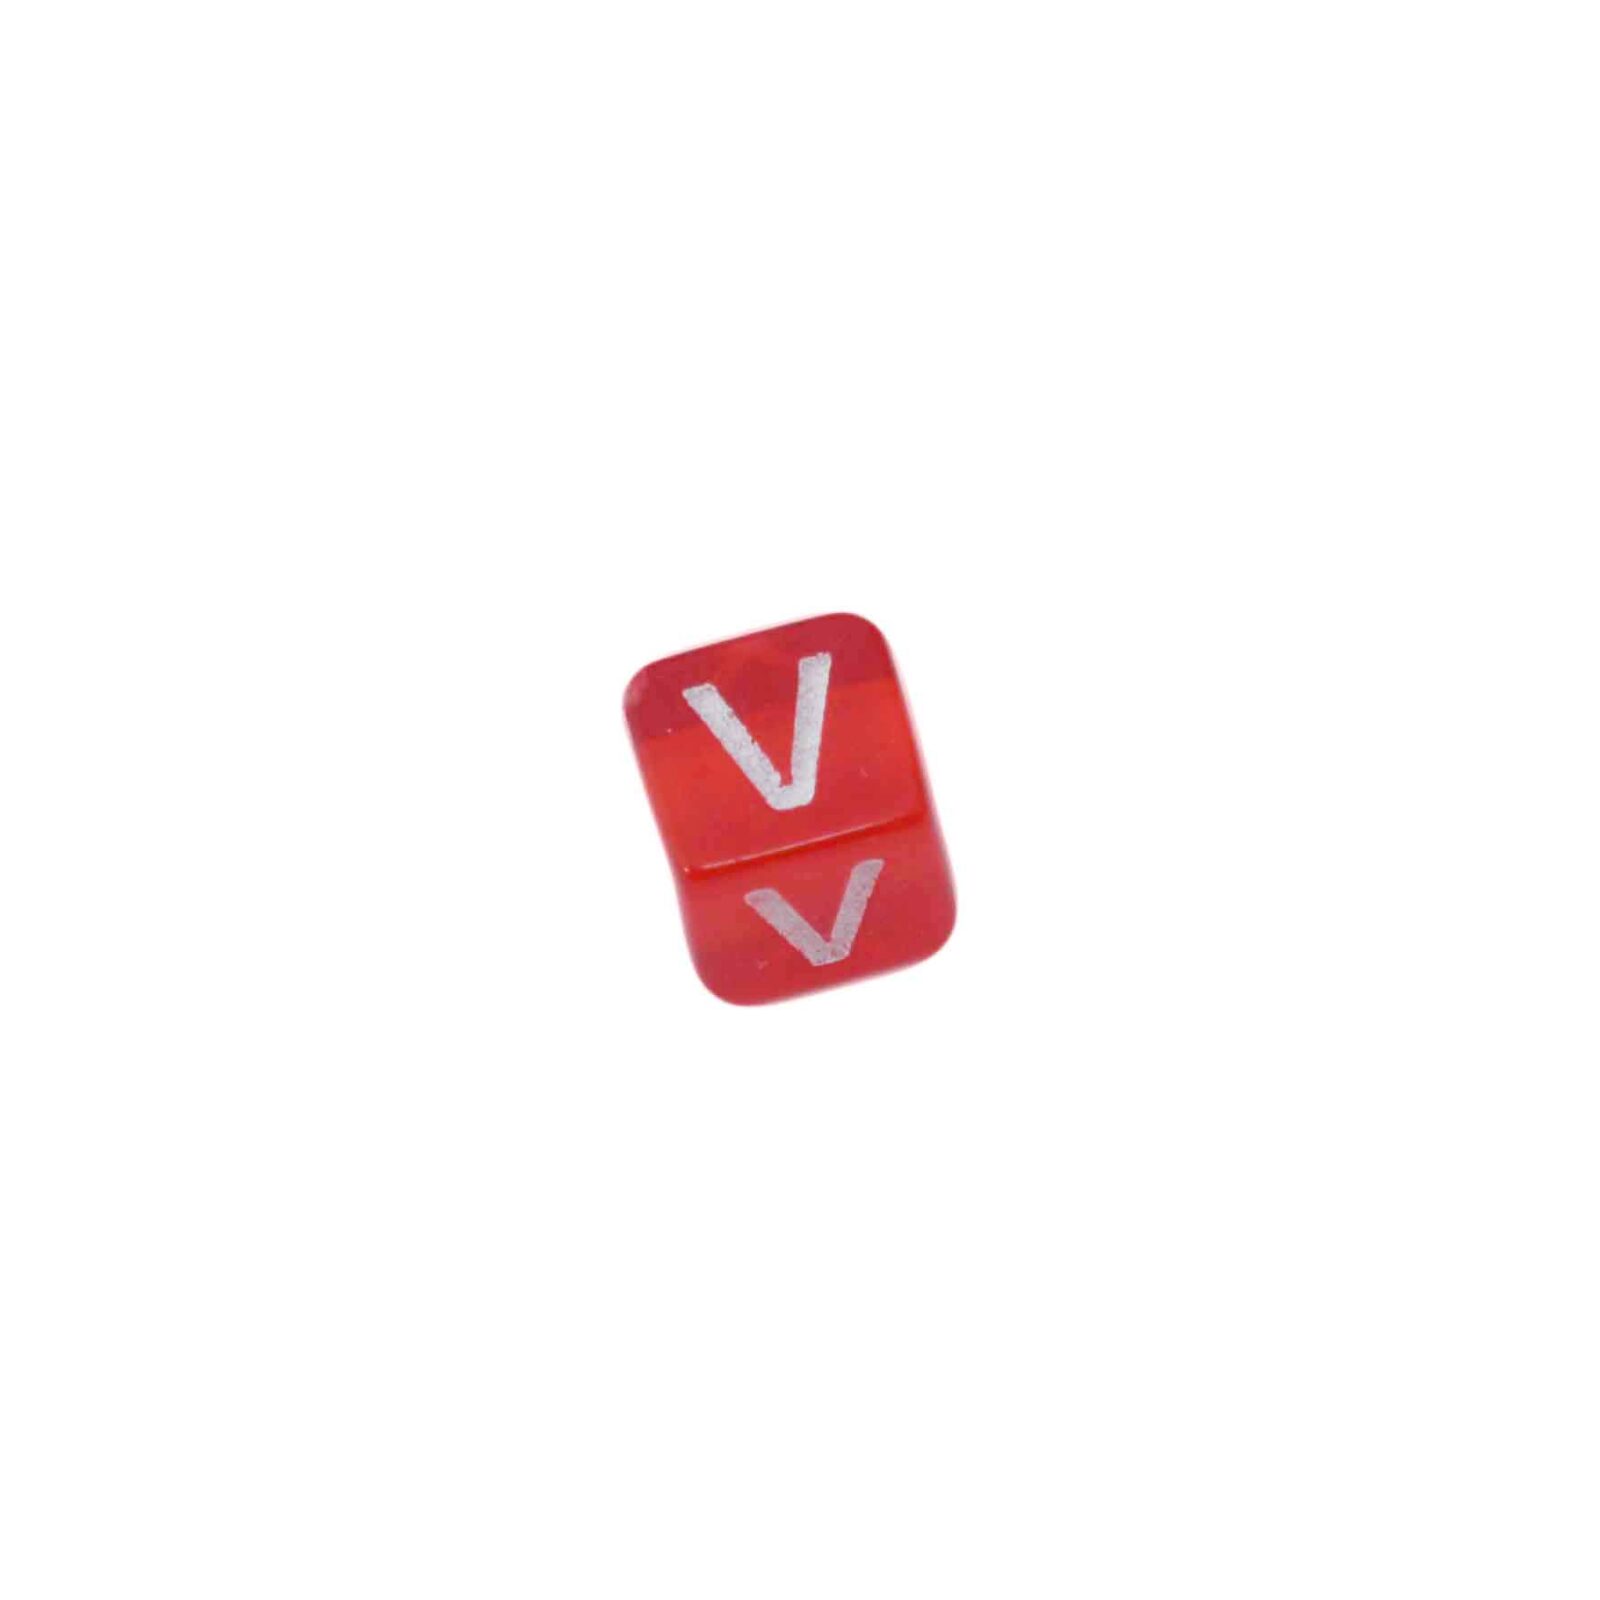 Rode letterkraal V